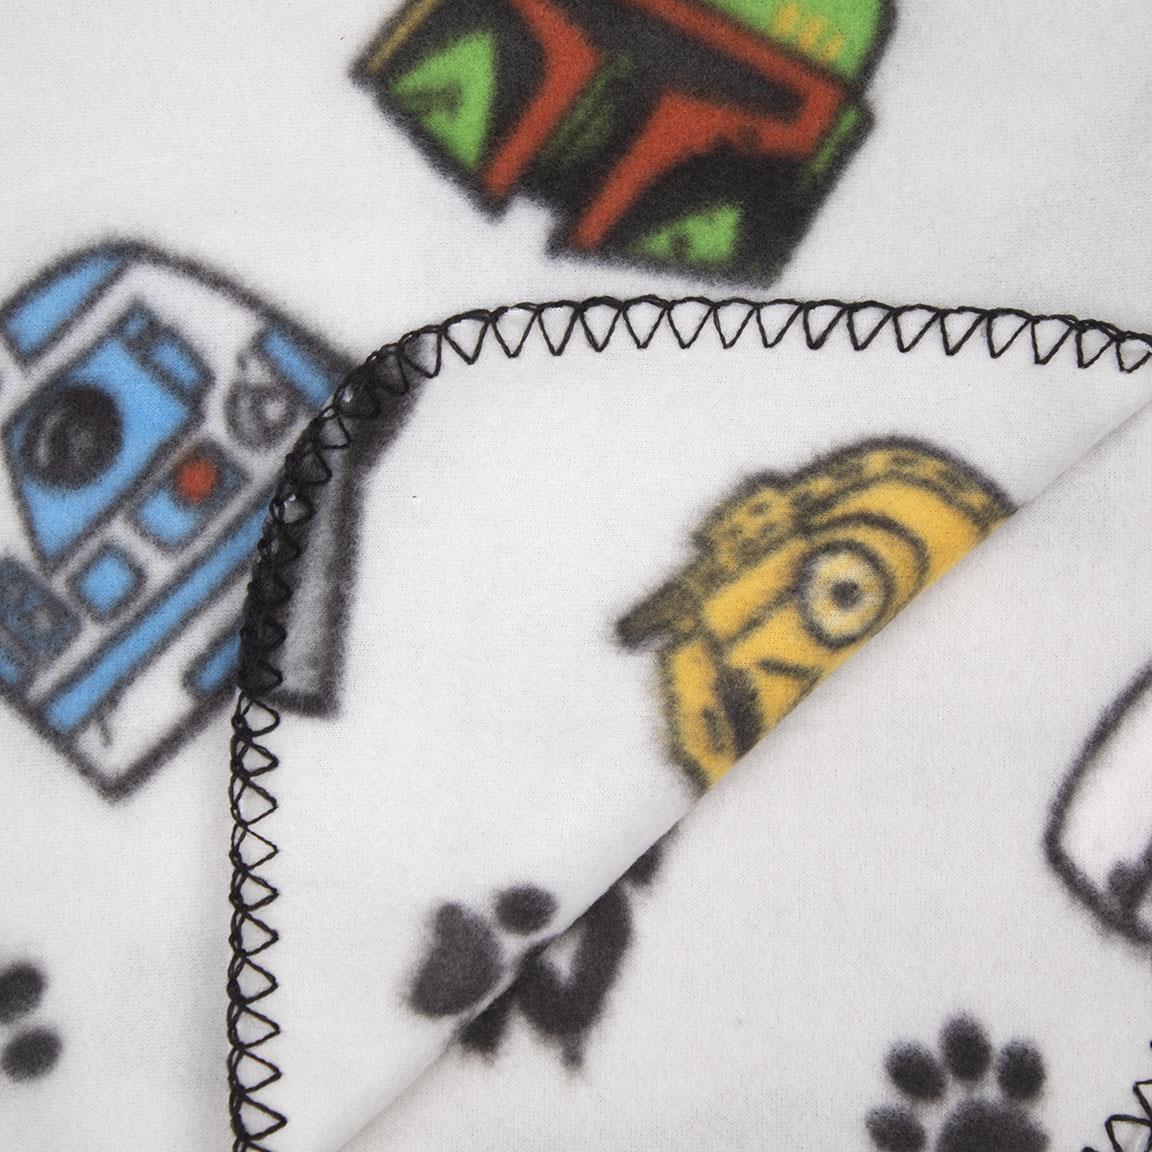 Cobertor para gatos Star Wars / Um cobertor adequado para um Jedi